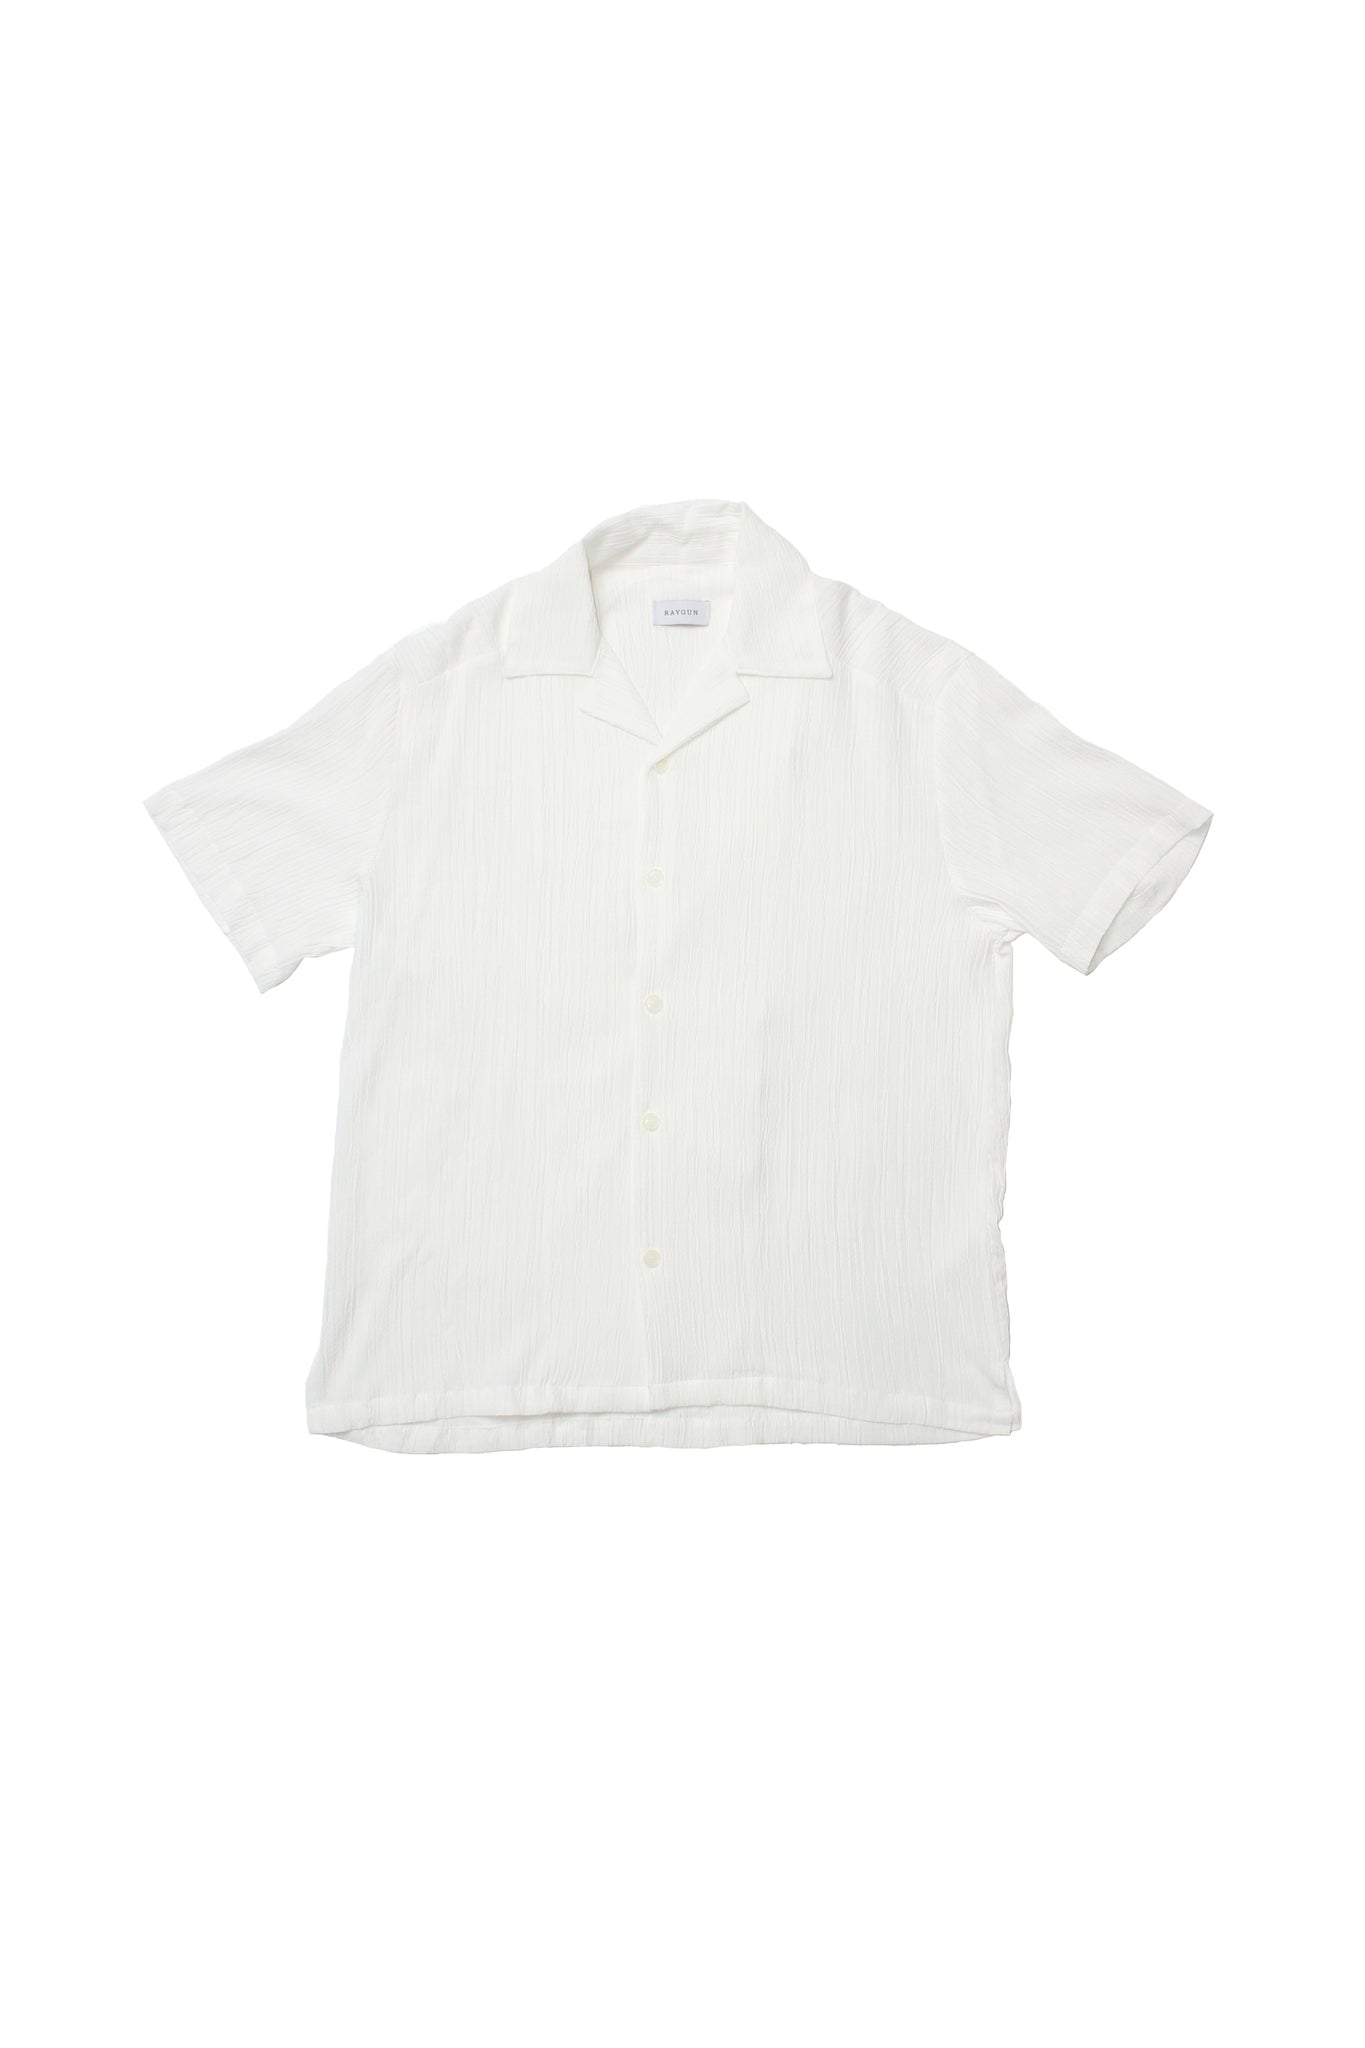 Hazel Pleats Shirts in White